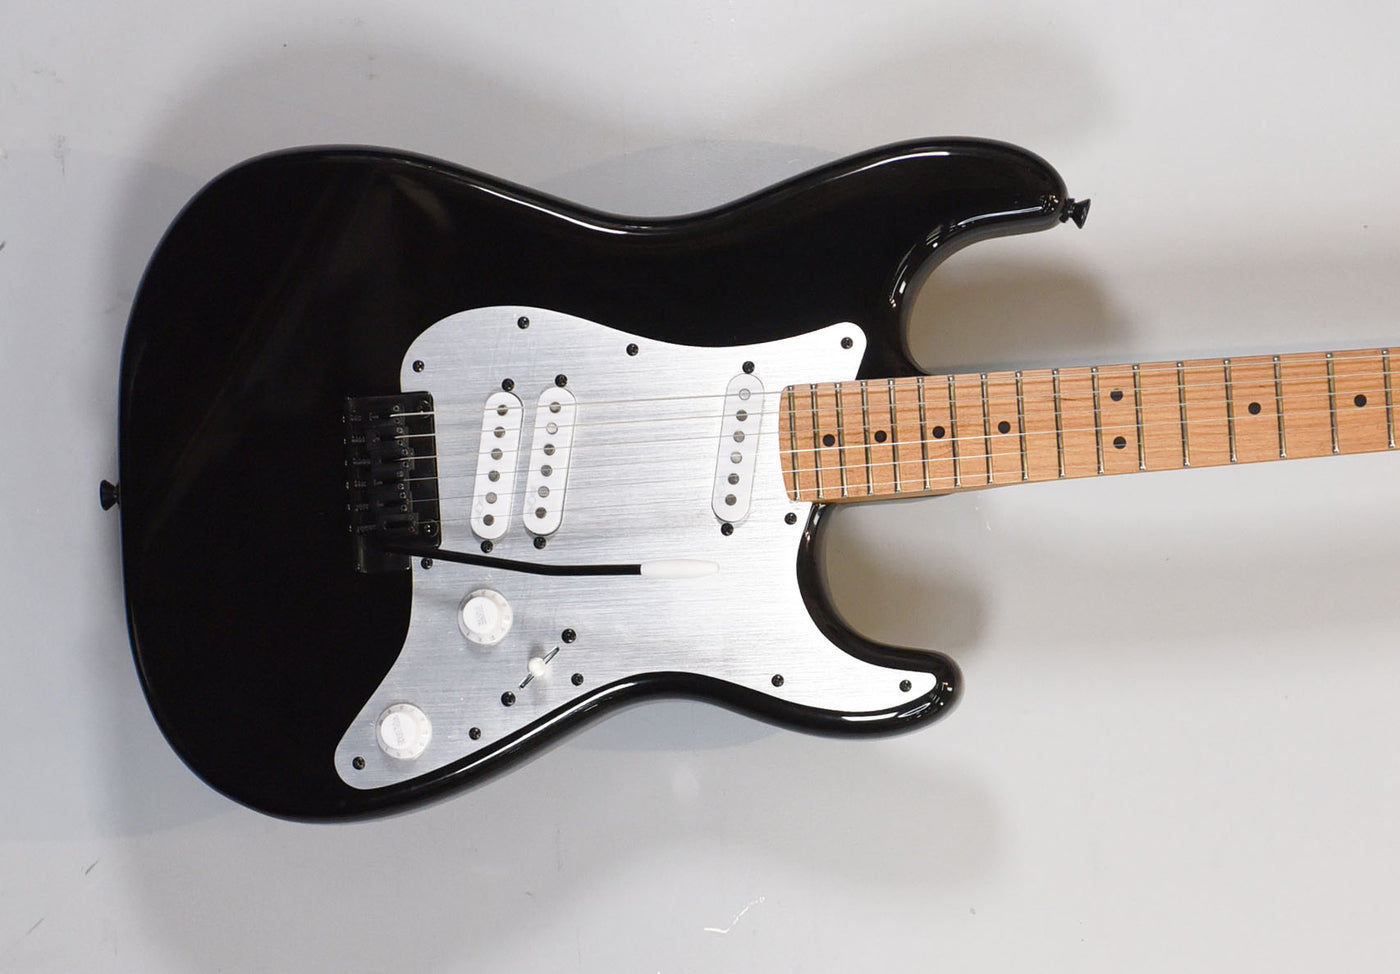 Contemporary Stratocaster Special - Black, '21